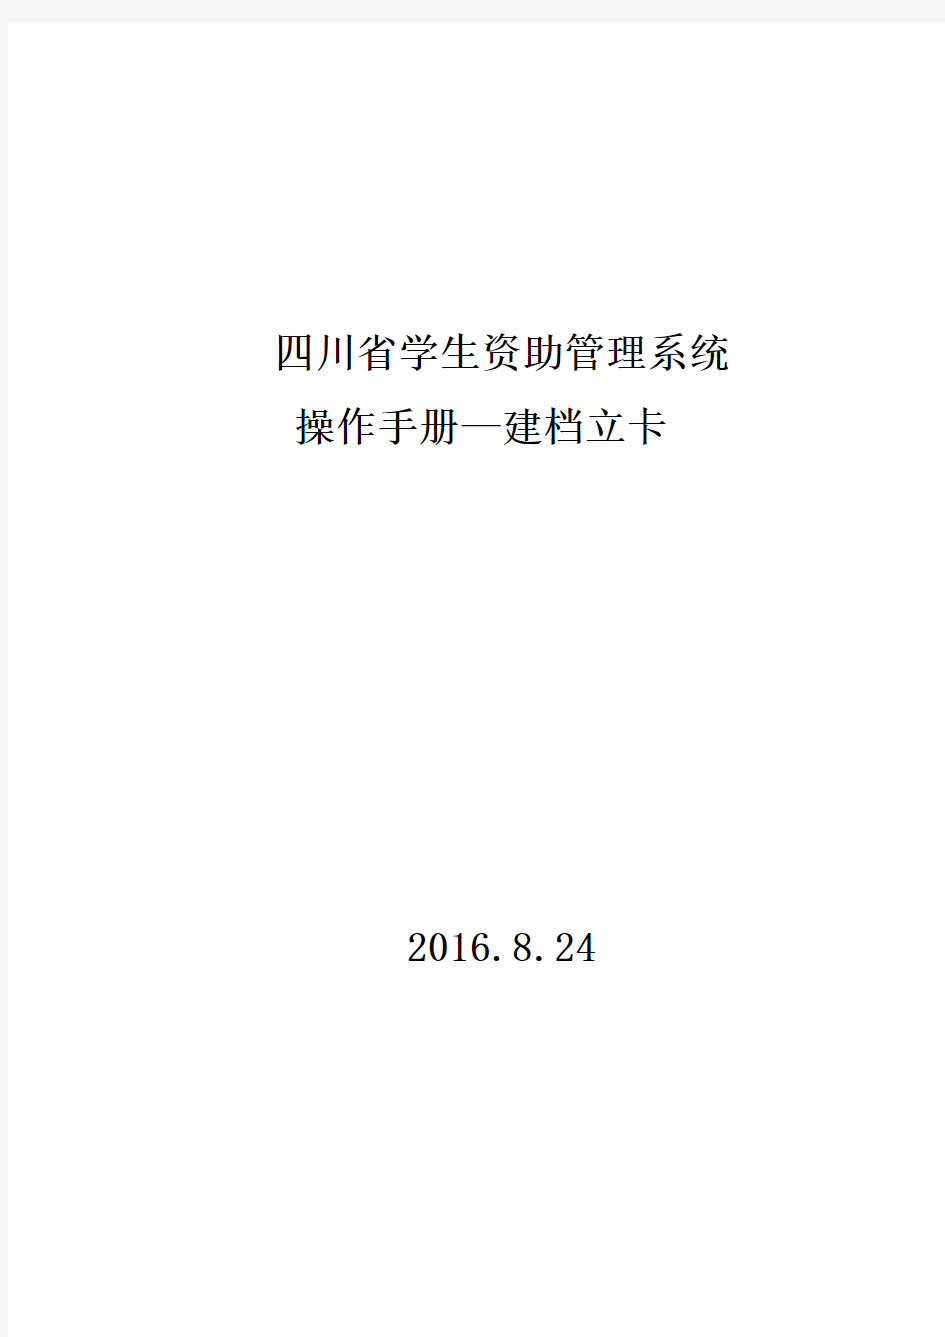 四川省学生资助管理系统操作手册—建档立卡